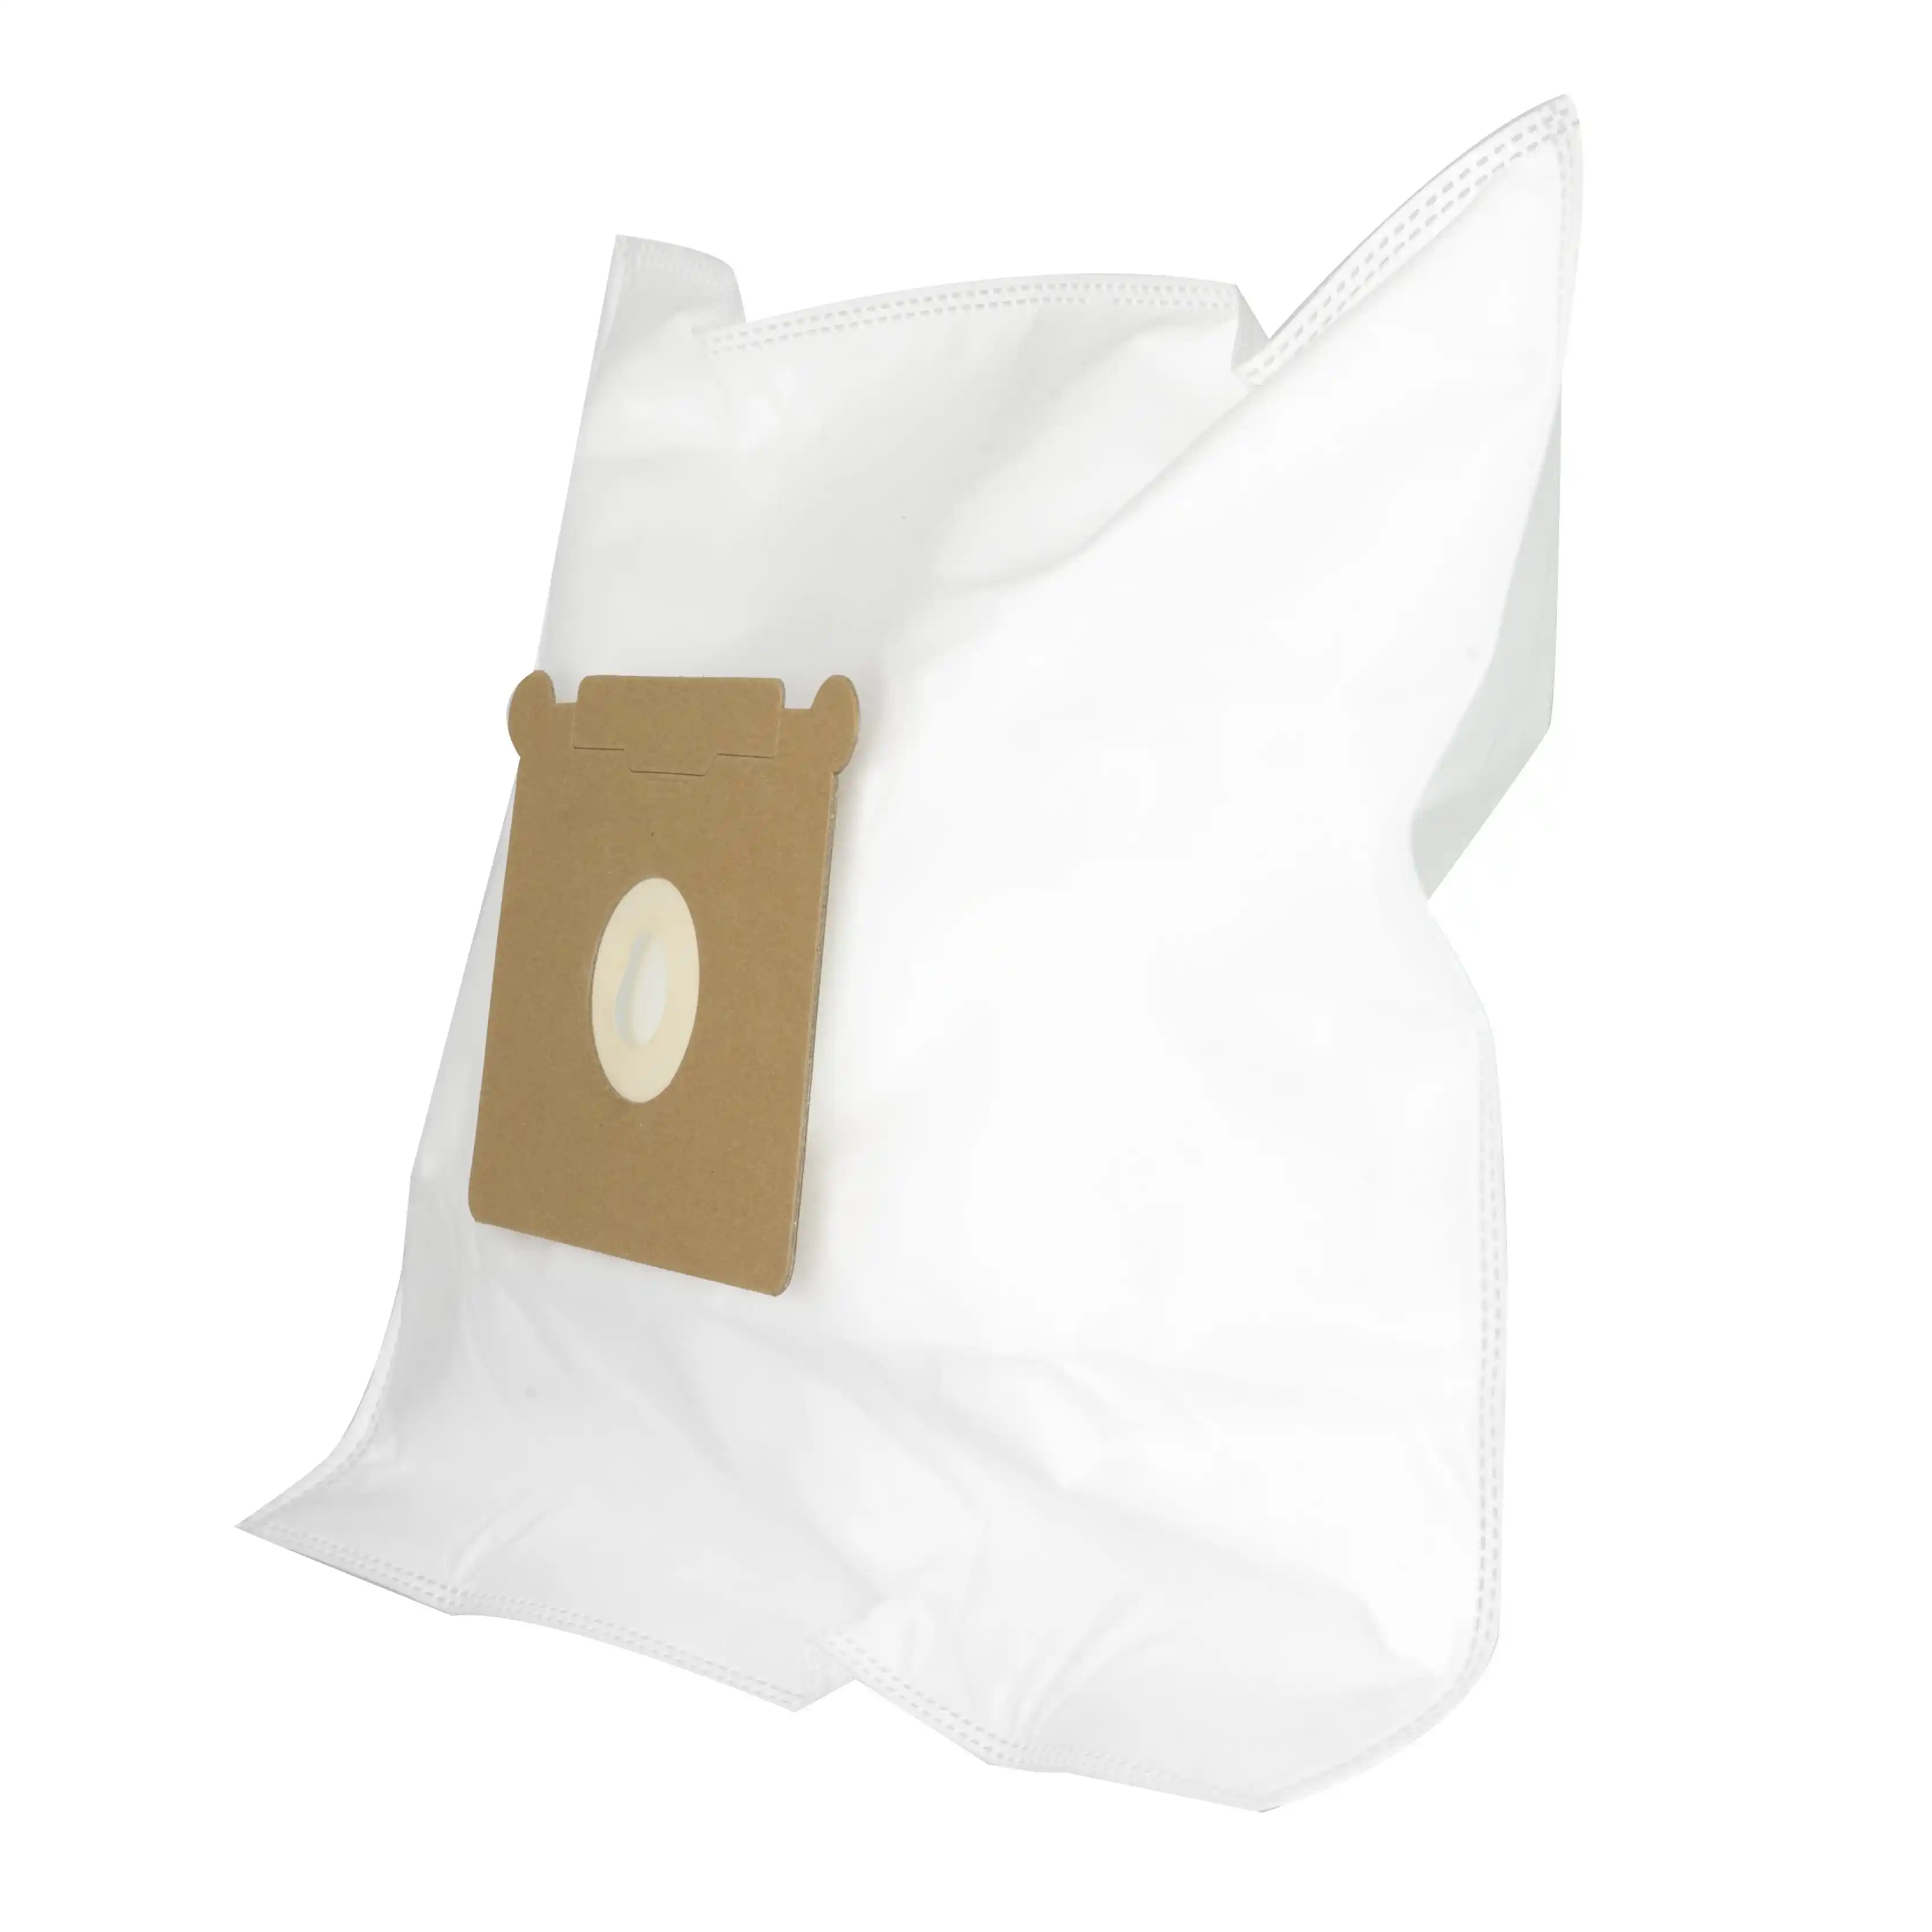 Ghibli AS5 sacchetto filtro universale non tessuto per aspirapolvere in tessuto non tessuto compatibile con Unifit 160 Pullman